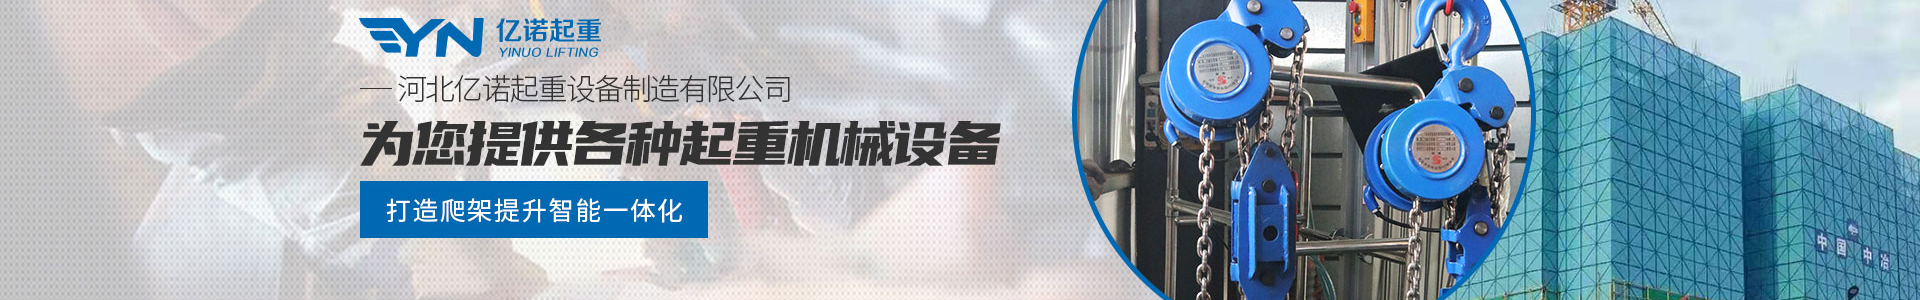 建筑模板专用环链电动葫芦_产品展示_亿诺起重有限公司